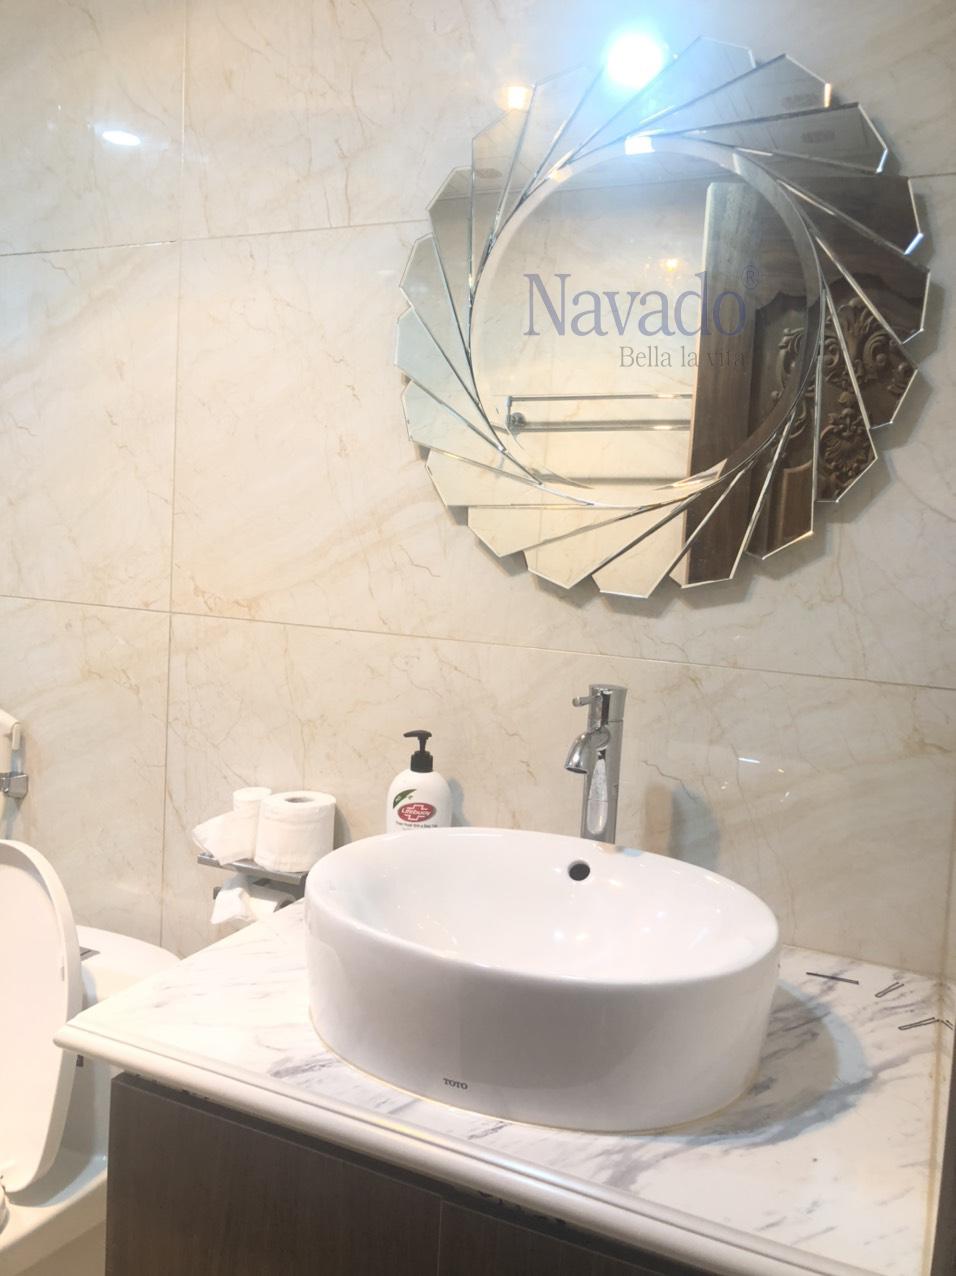 Gương treo tường Nha Trang là lựa chọn lý tưởng để trang trí cho phòng tắm của bạn. Với thiết kế đẹp mắt và chất lượng cao, gương treo tường Nha Trang giúp tăng thêm vẻ sang trọng và tiện nghi cho không gian của bạn. Bạn sẽ thực sự hài lòng với sản phẩm này khi sử dụng.